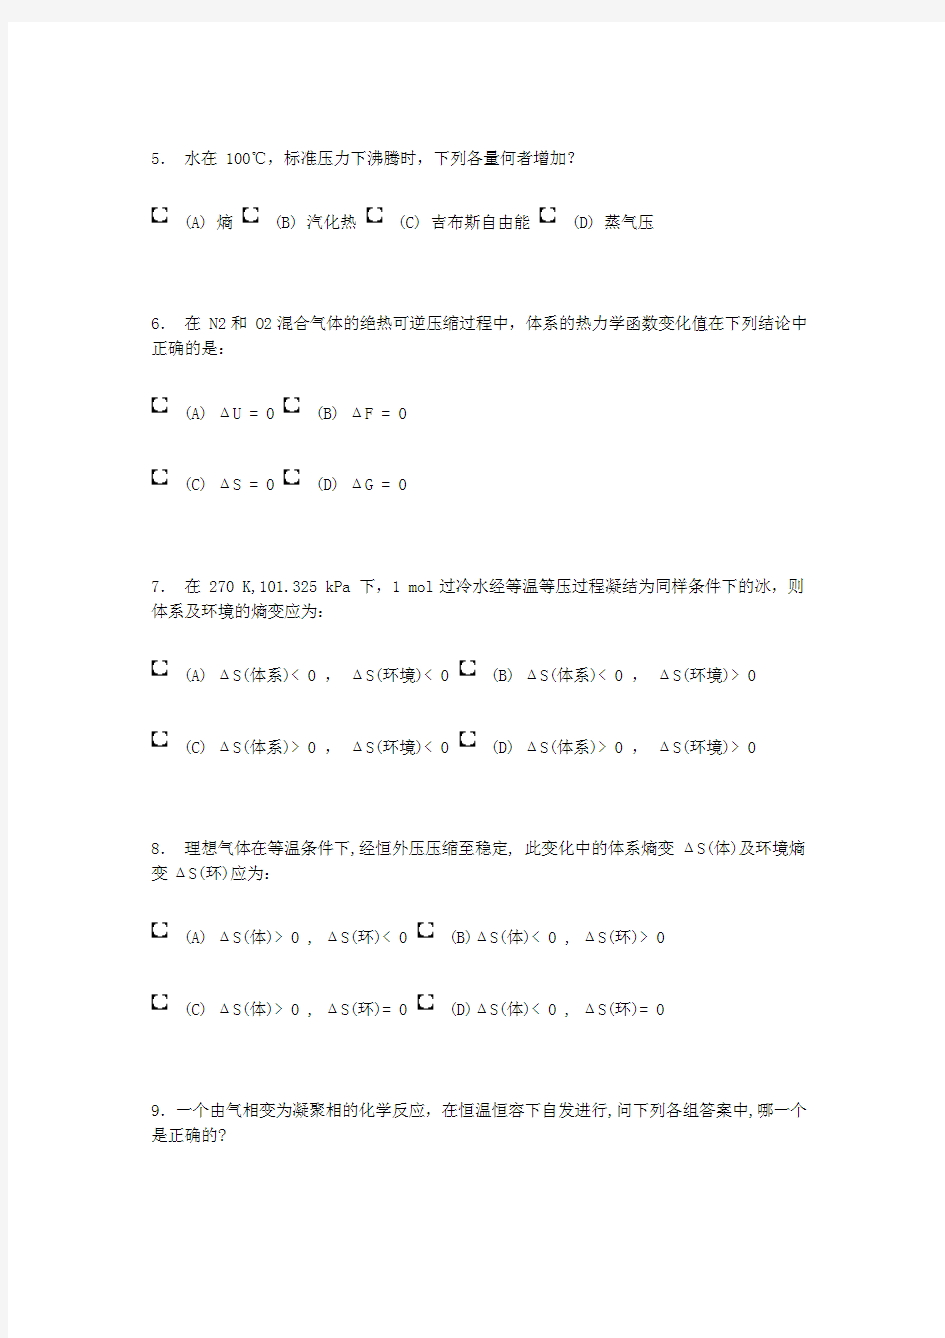 南京大学《物理化学》考试 第二章 热力学第二定律